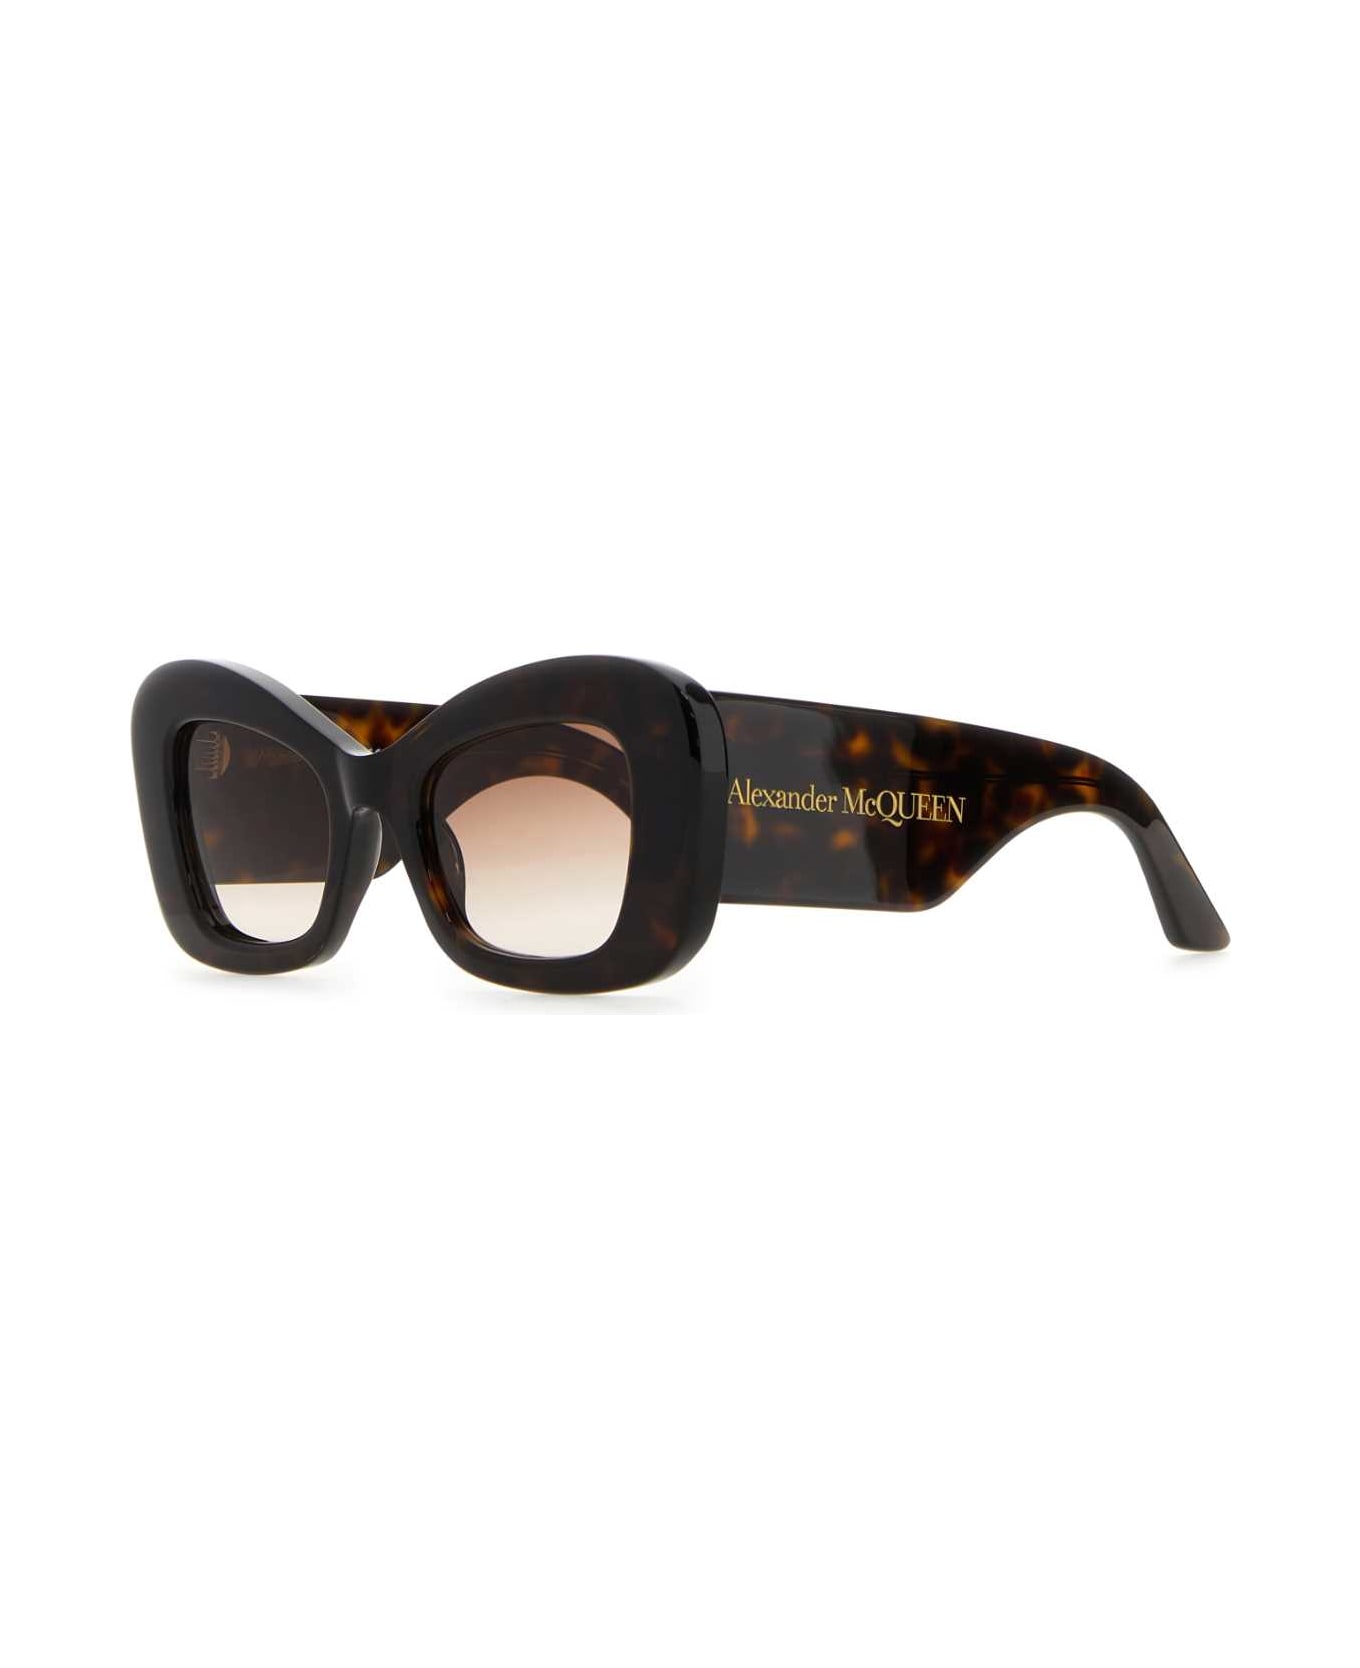 Alexander McQueen Two-tone Acetate Sunglasses - HAVANAHAVANABROWN サングラス